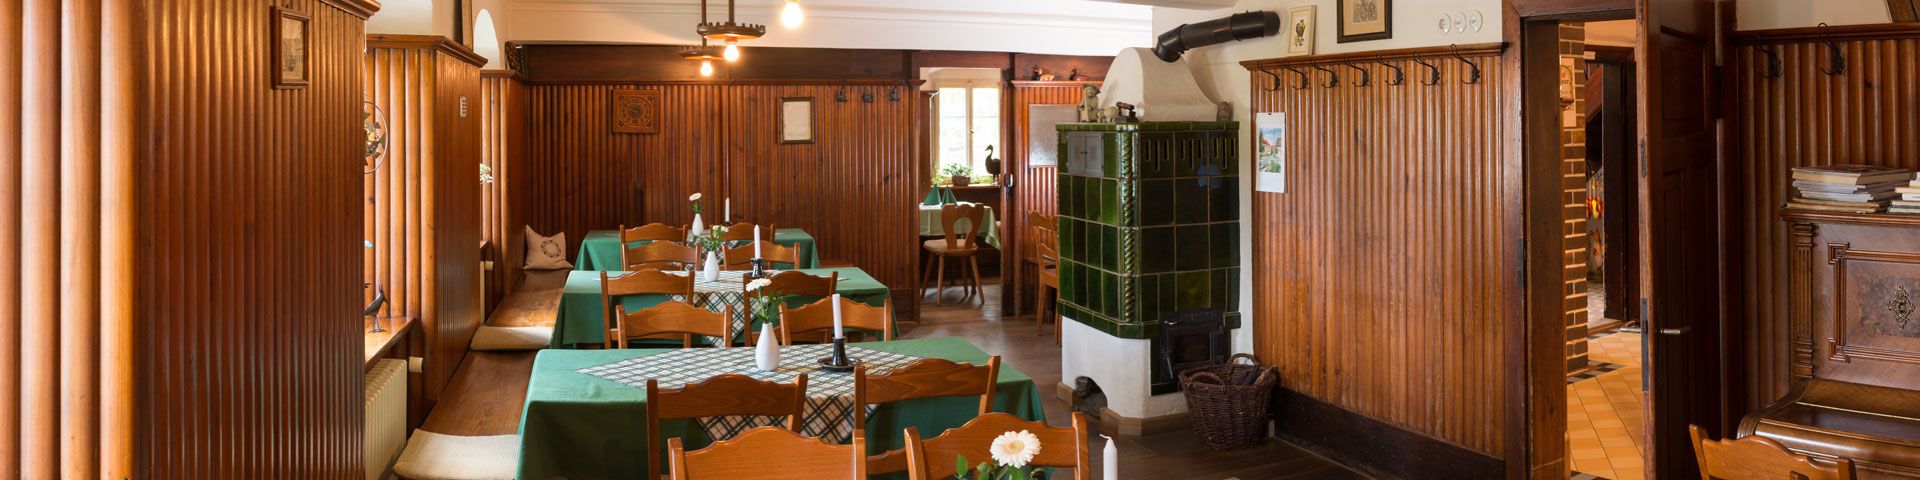 Gutshof Andres Restaurant